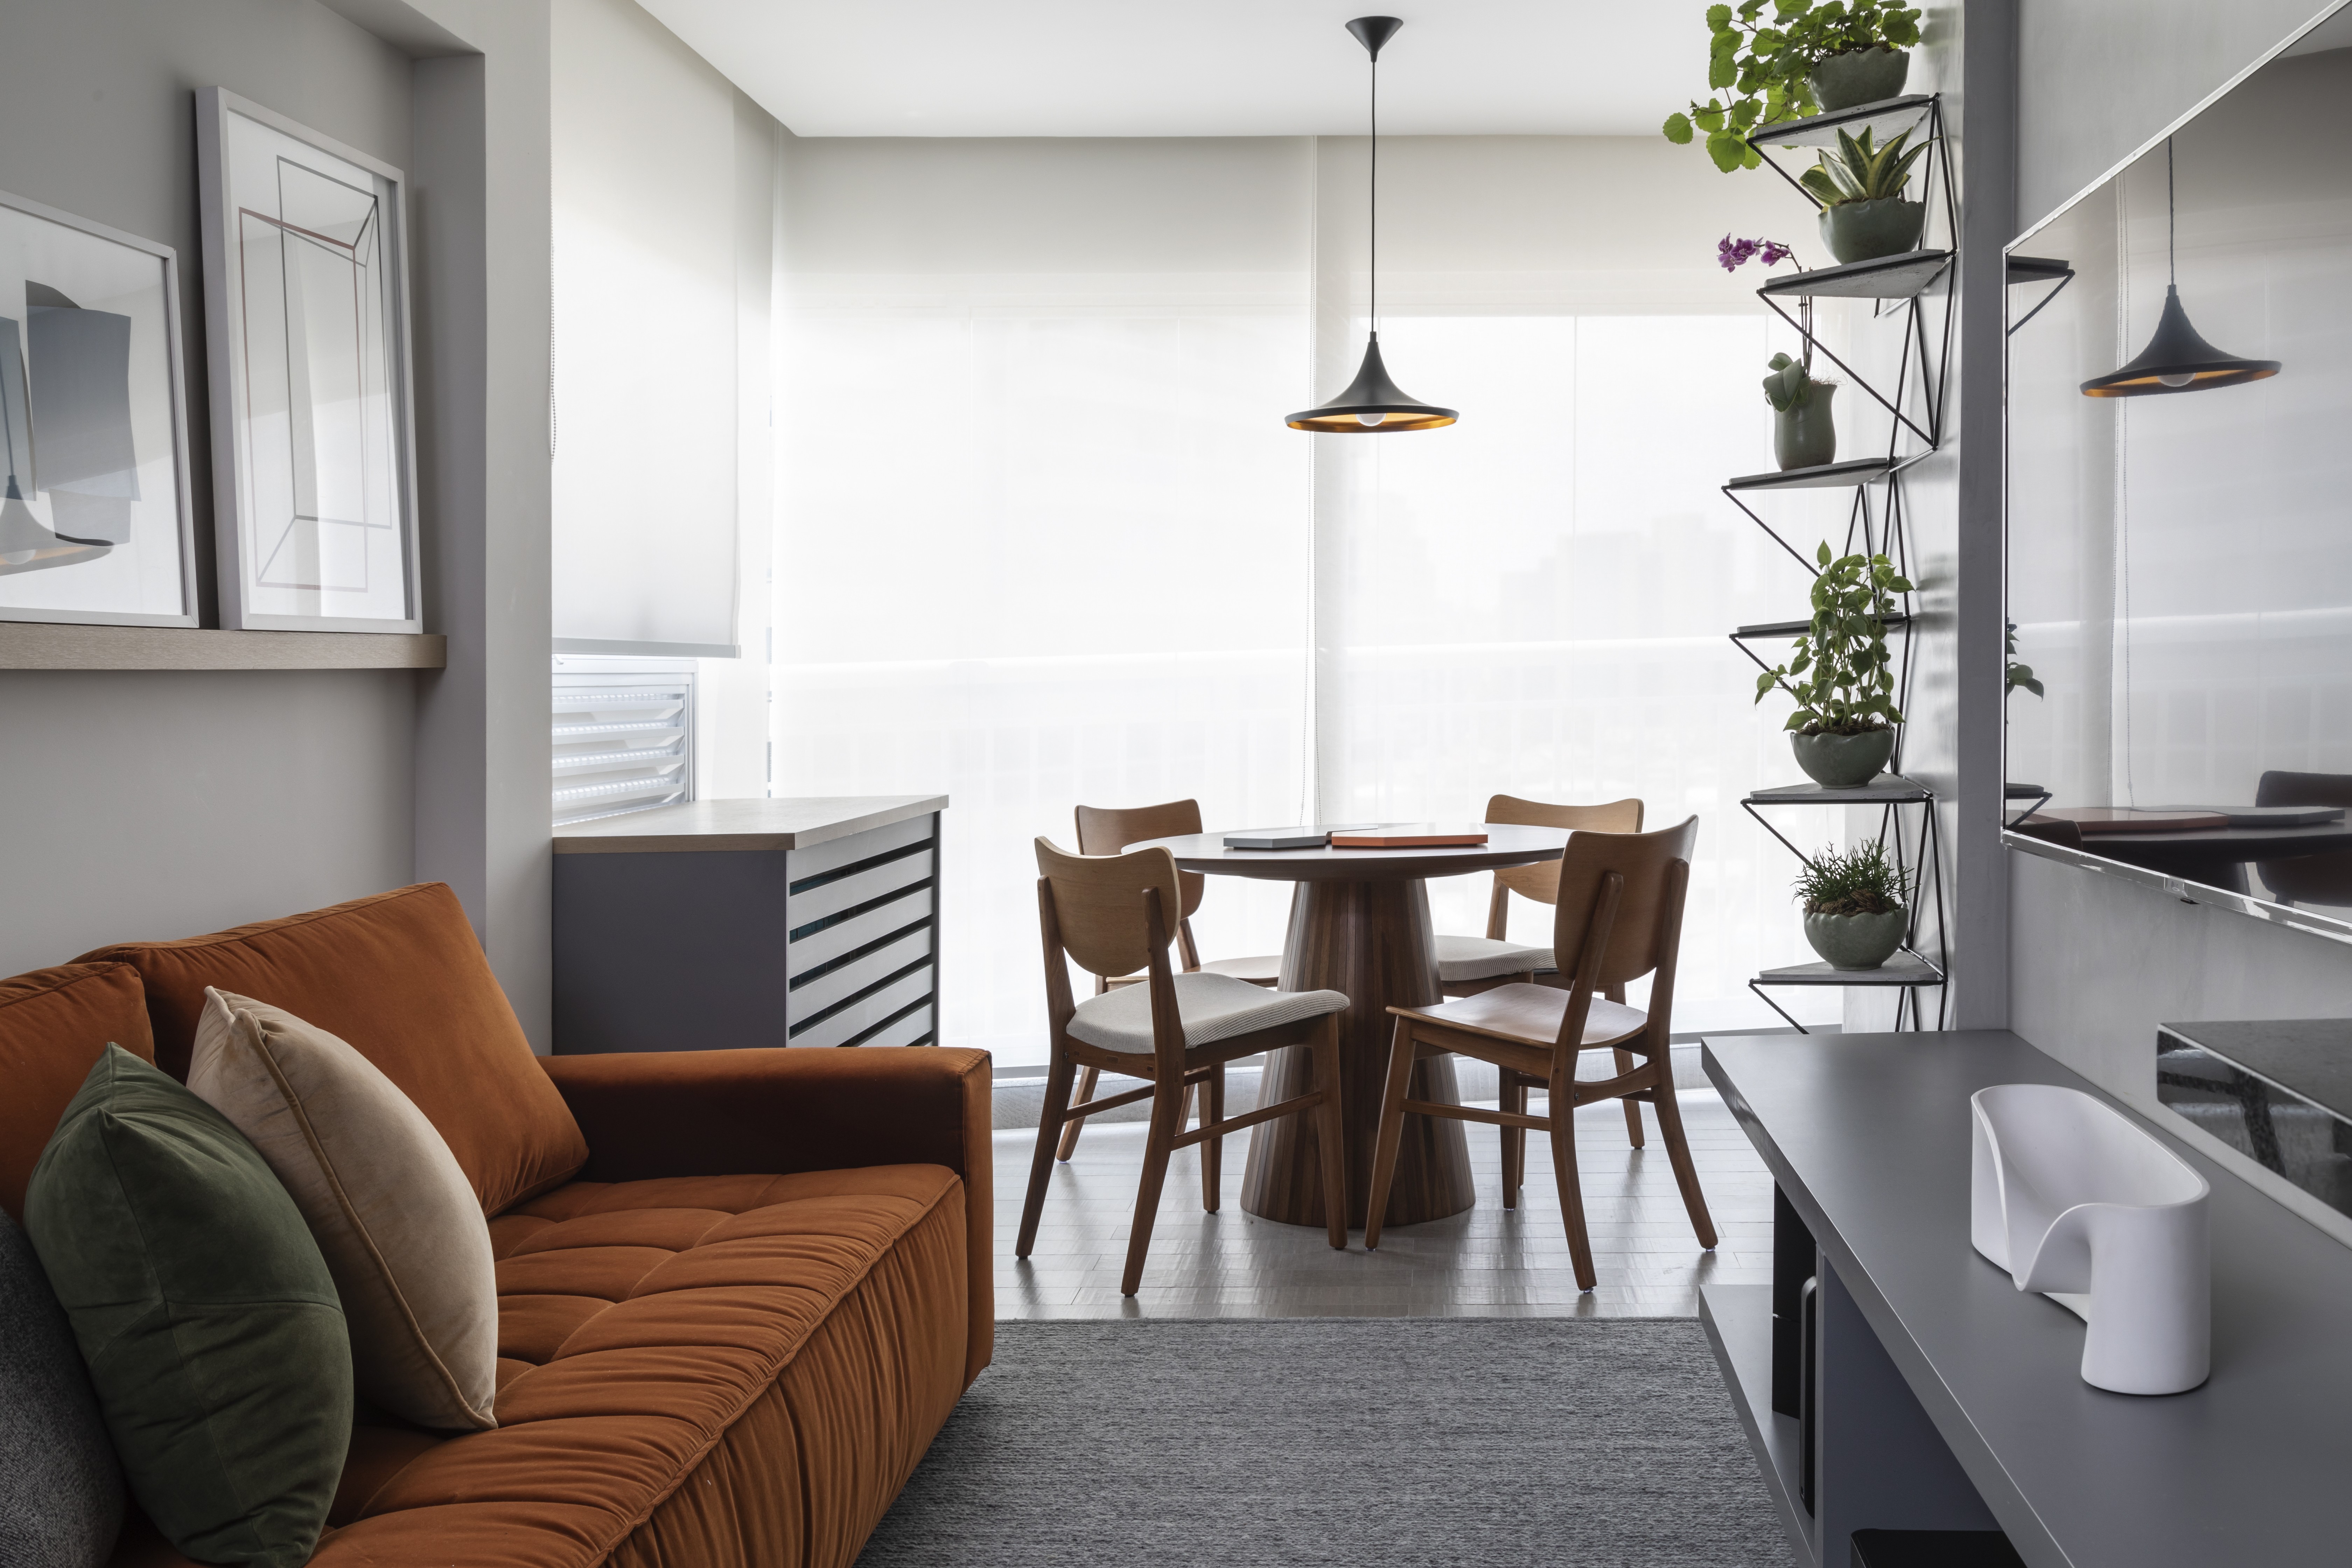 Décor do dia: sala de estar com terraço e jantar integrados (Foto: Evelyn Müller)